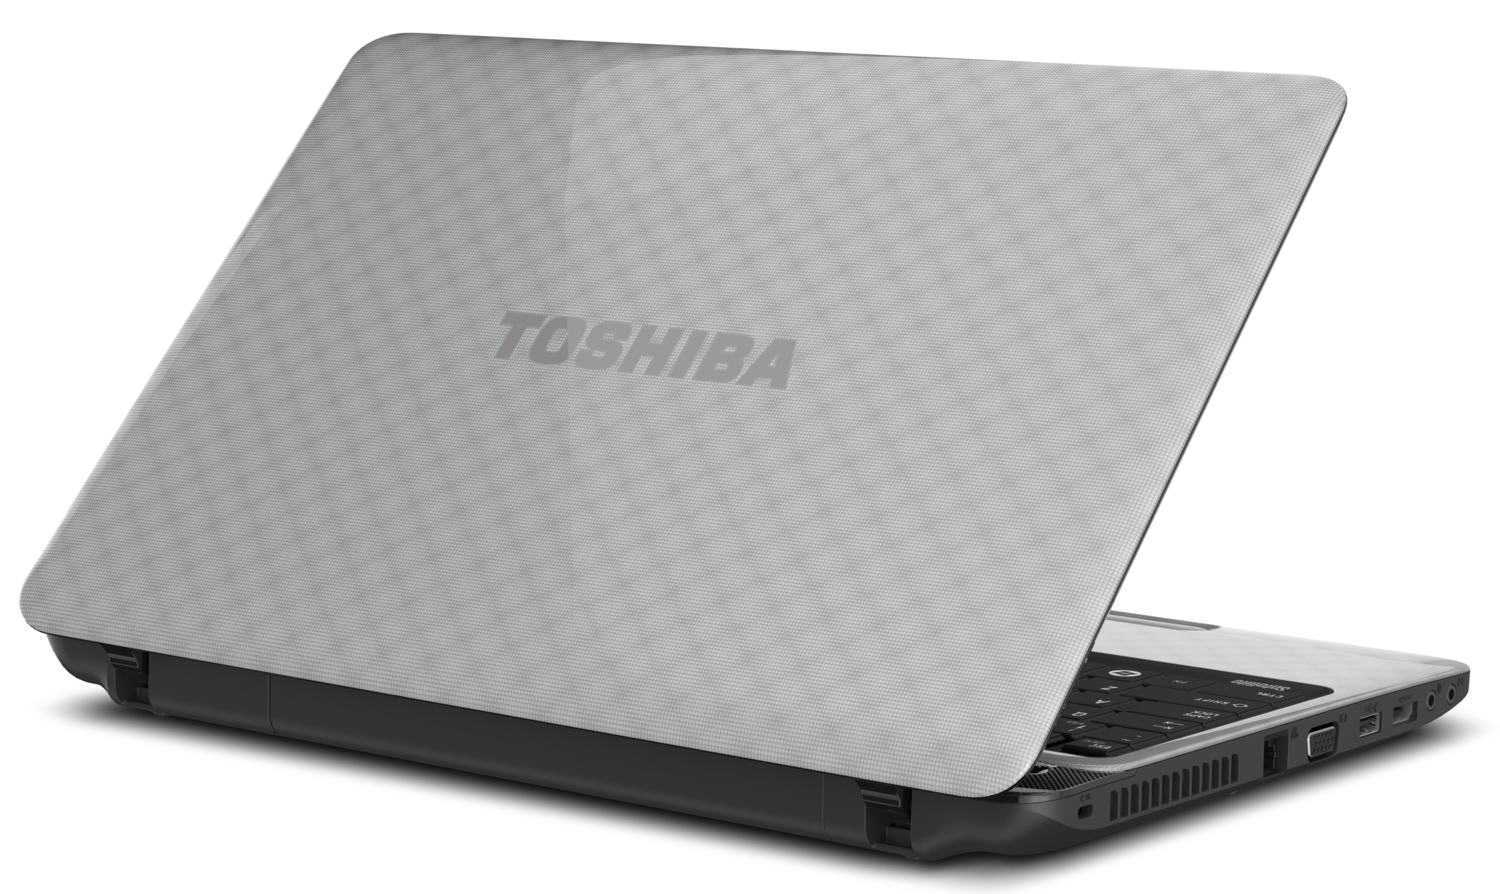 Ремонт ноутбуков Toshiba в Уфк